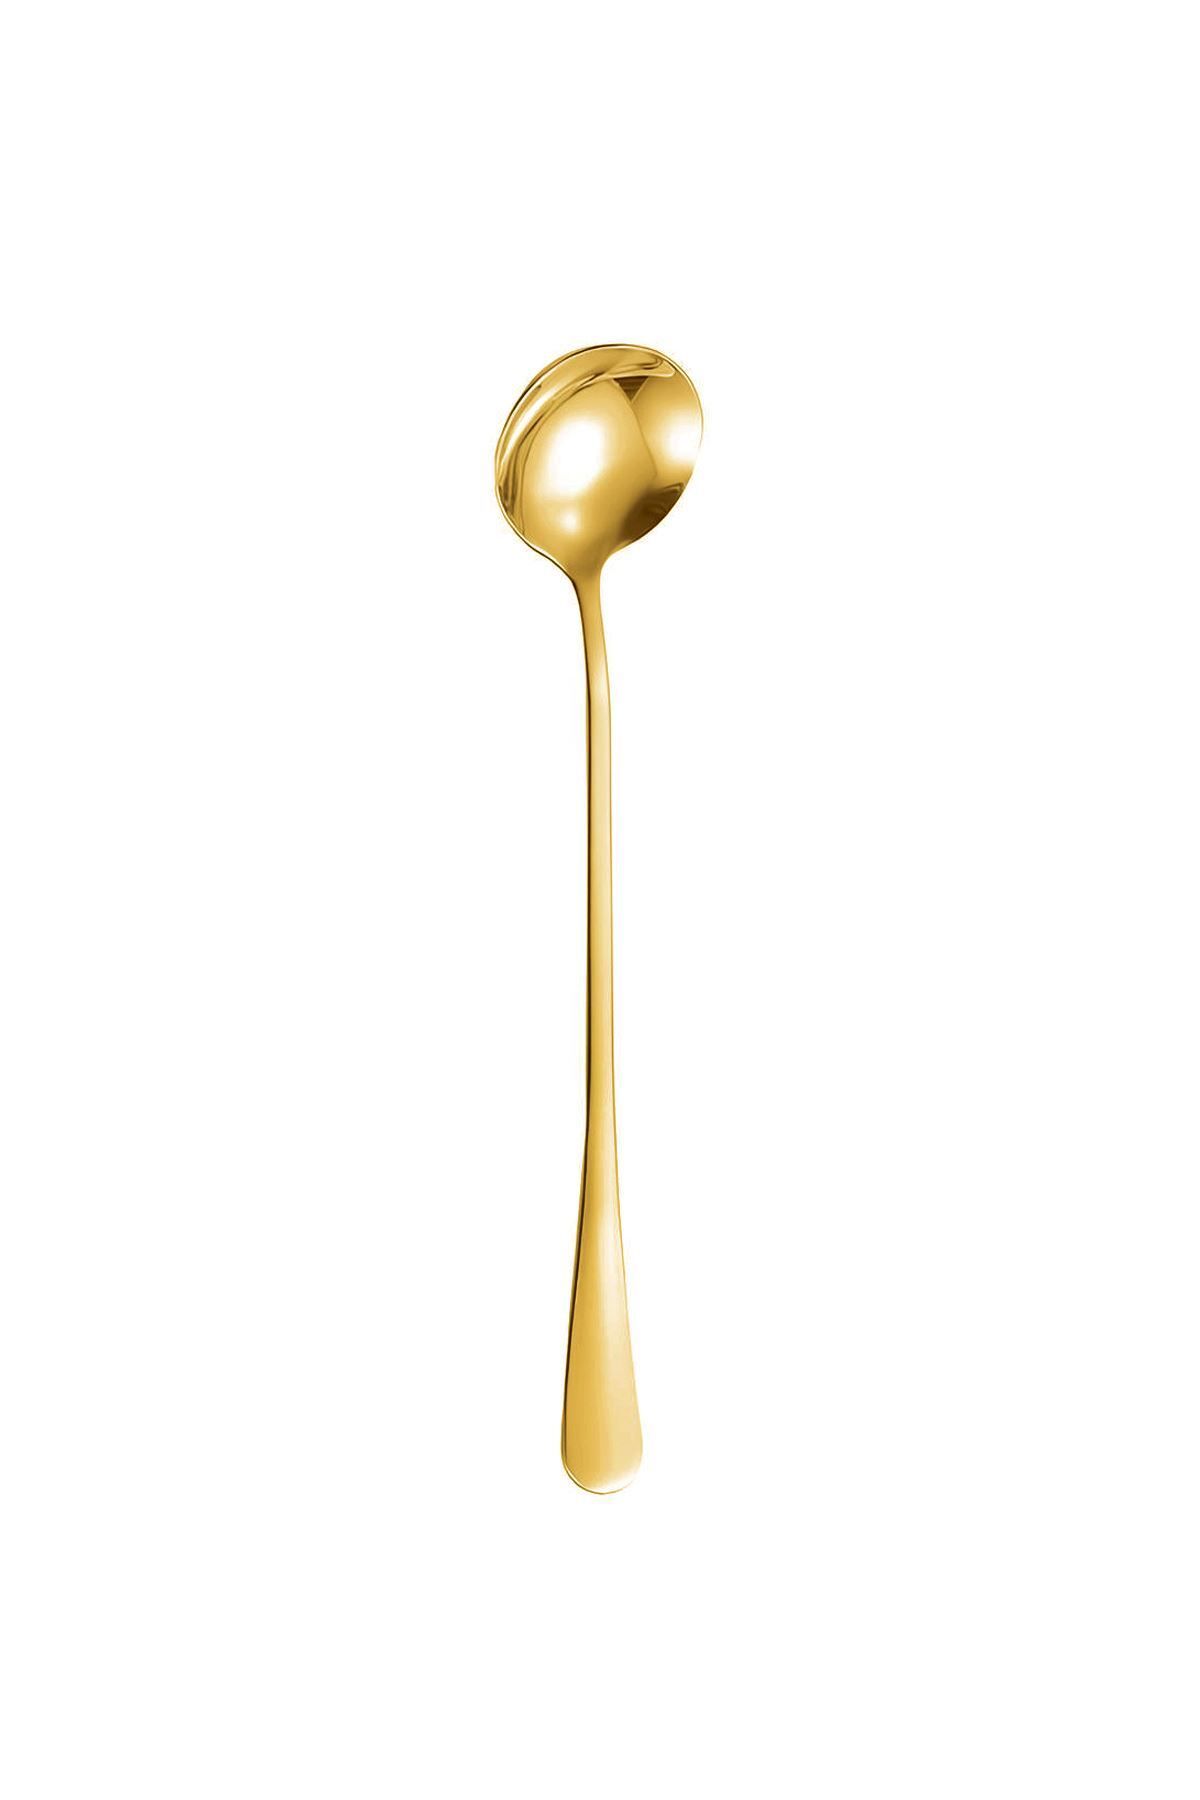 Chavin Paslanmaz Çelik Gold 18 cm Uzun Tatlı Latte ve Dondurma Kaşığı cin510sr